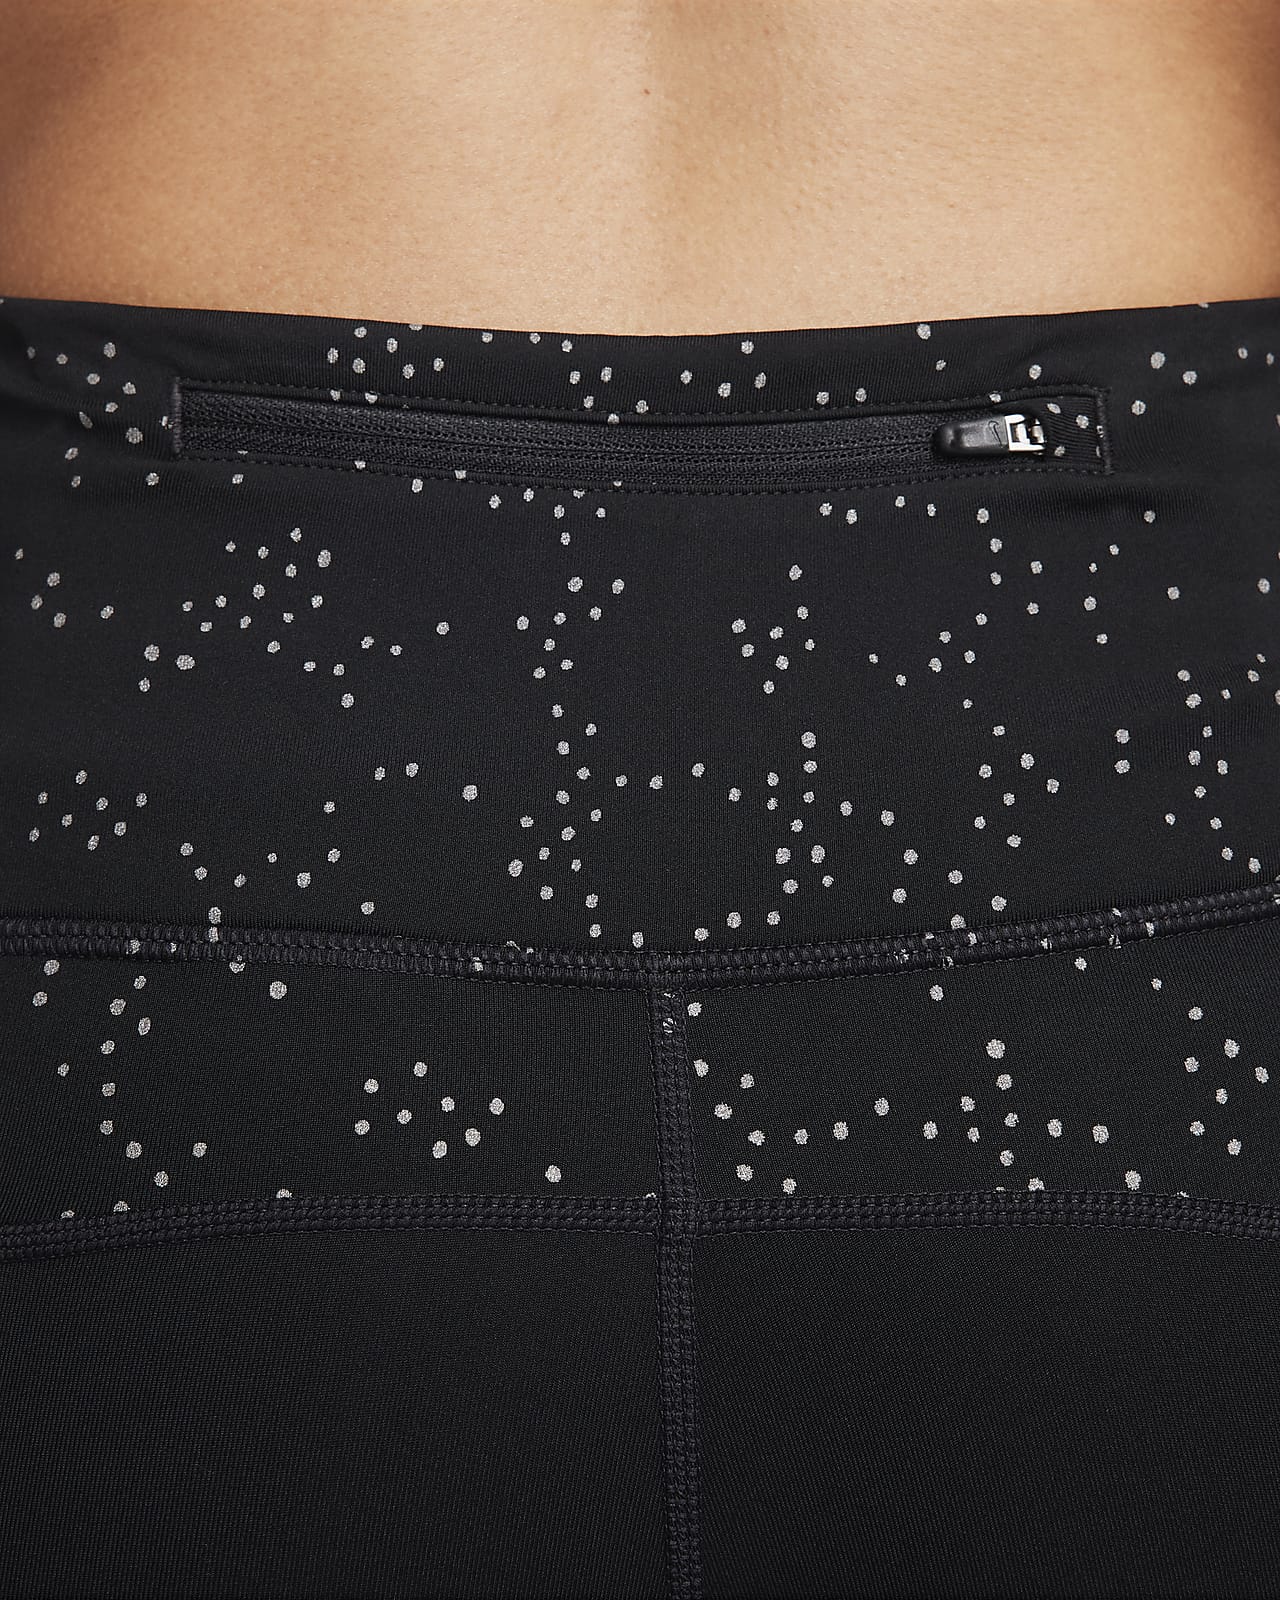 Black Lululemon leggings with dot mesh detail on back